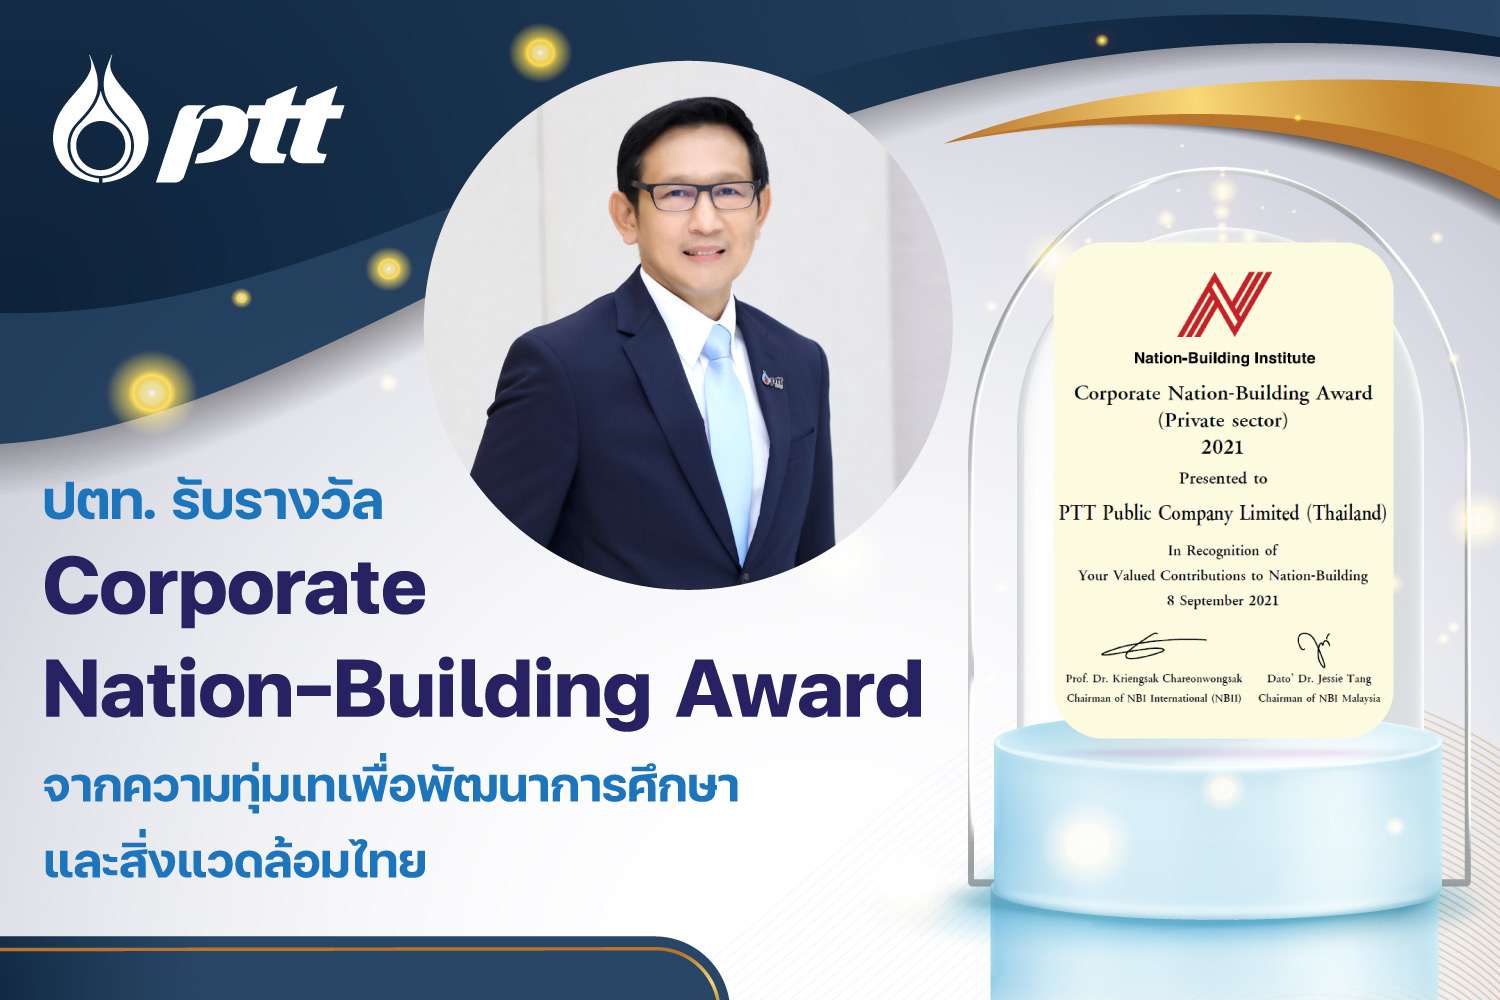 ปตท. รับรางวัลระดับสากล “Corporate Nation-Building Award” จากความทุ่มเทเพื่อพัฒนาการศึกษาและสิ่งแวดล้อมไทย